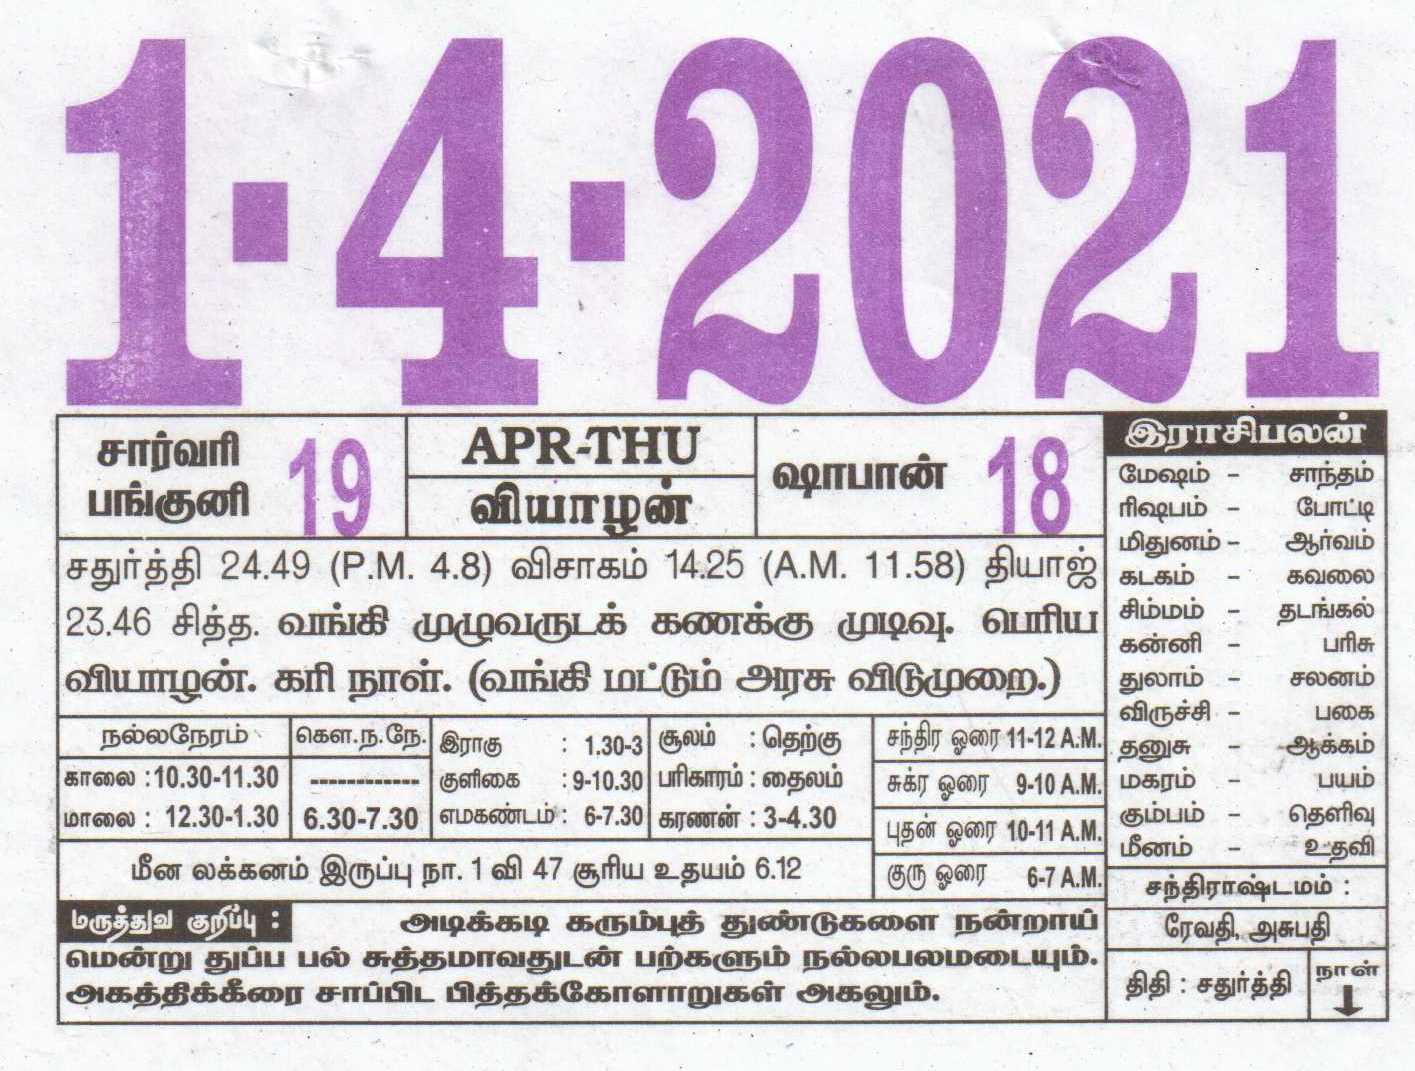 Tamil Daily Calendar 01042021 Date 01 , January daily Tear off